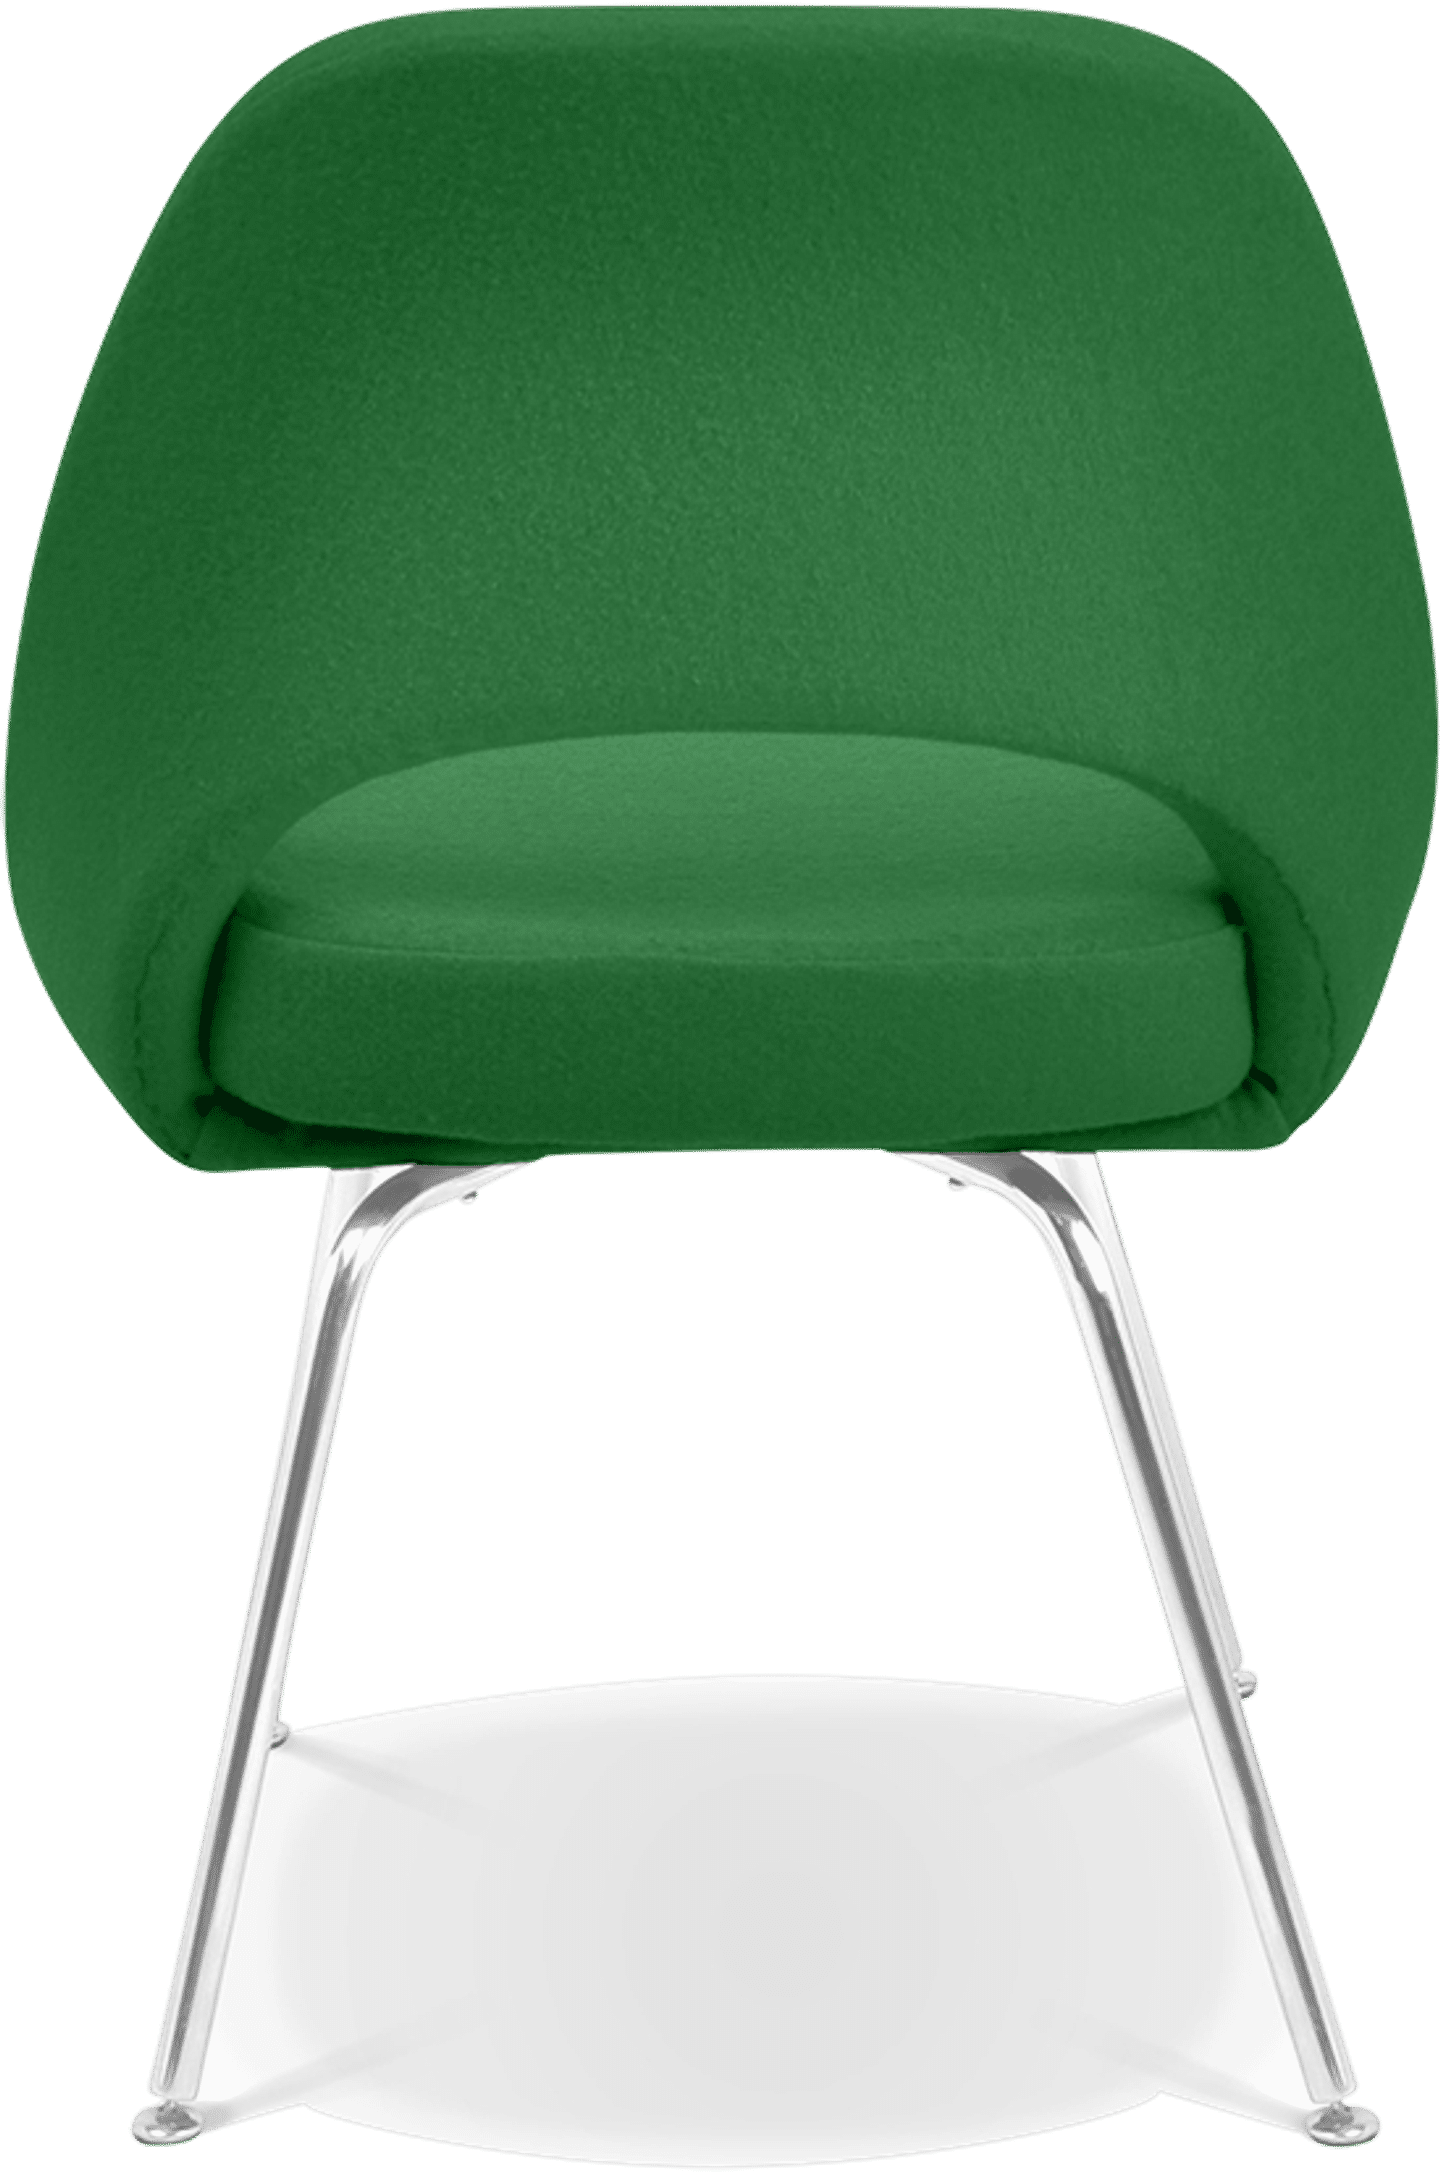 Saarinen Chefsessel Green image.